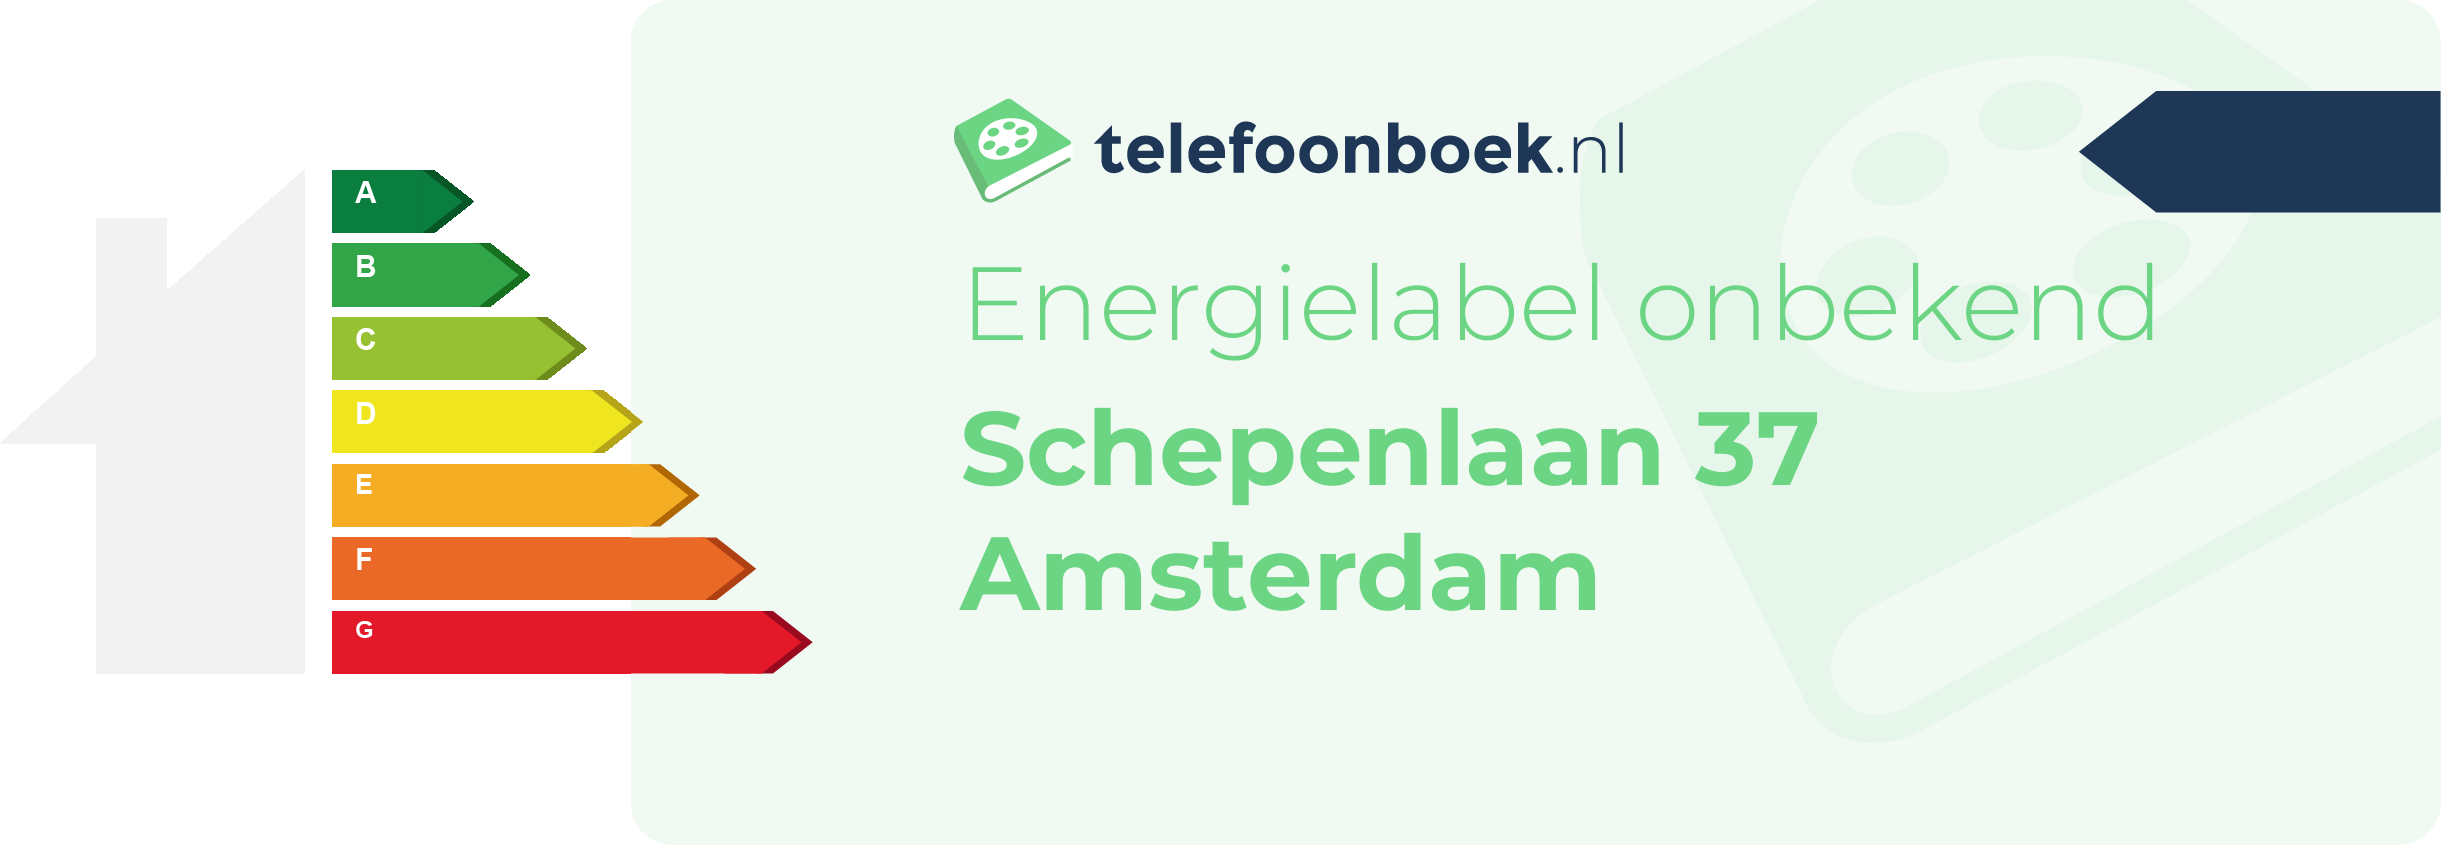 Energielabel Schepenlaan 37 Amsterdam